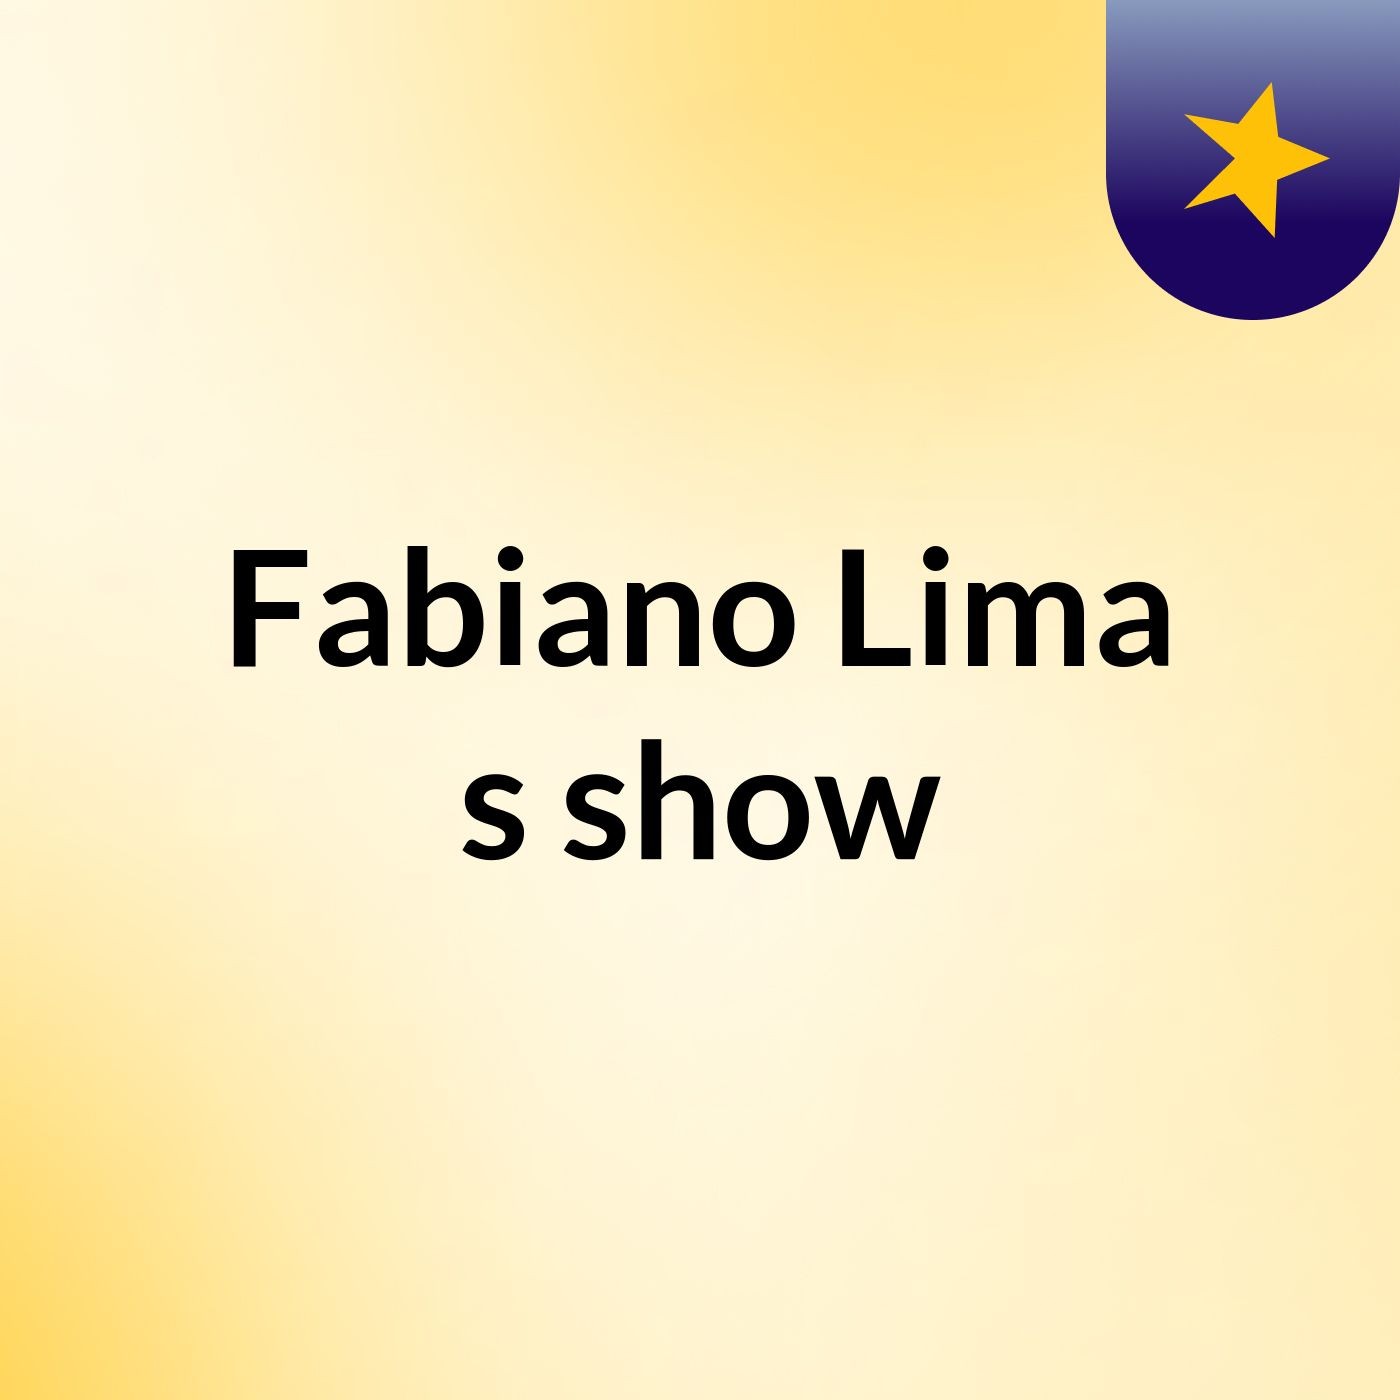 Fabiano Lima's show